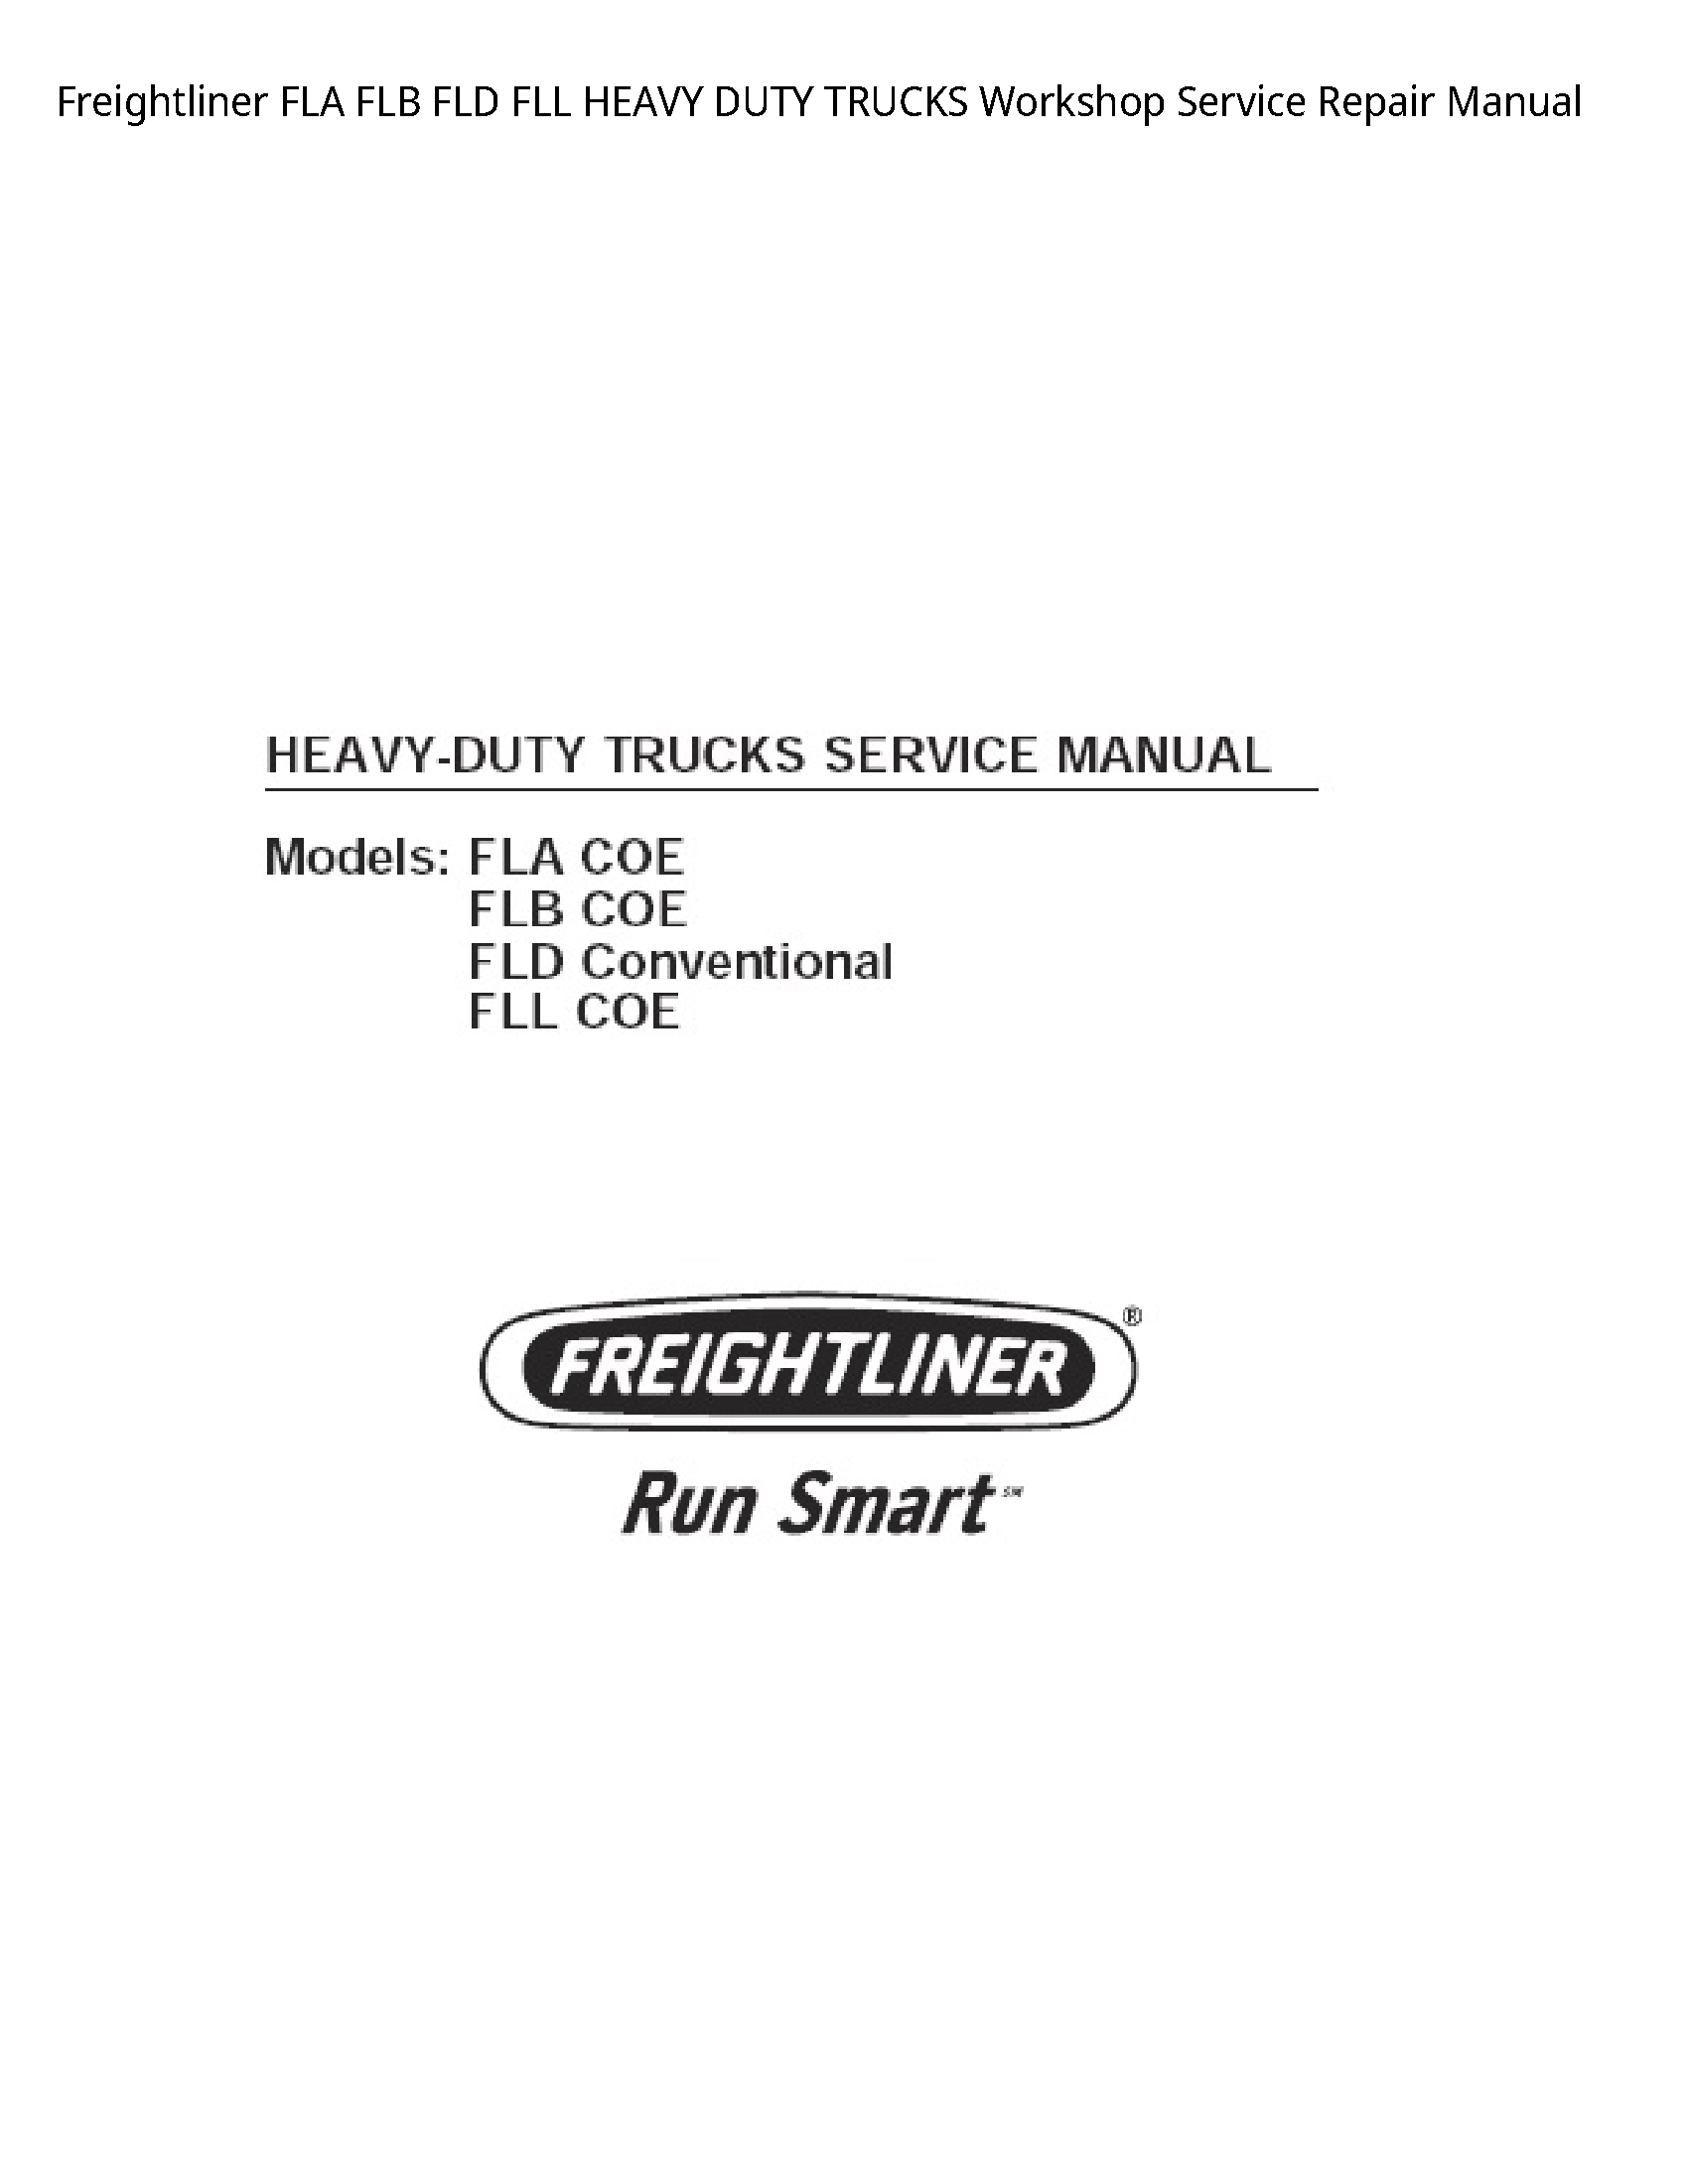 Freightliner FLA FLB FLD FLL HEAVY DUTY TRUCKS manual